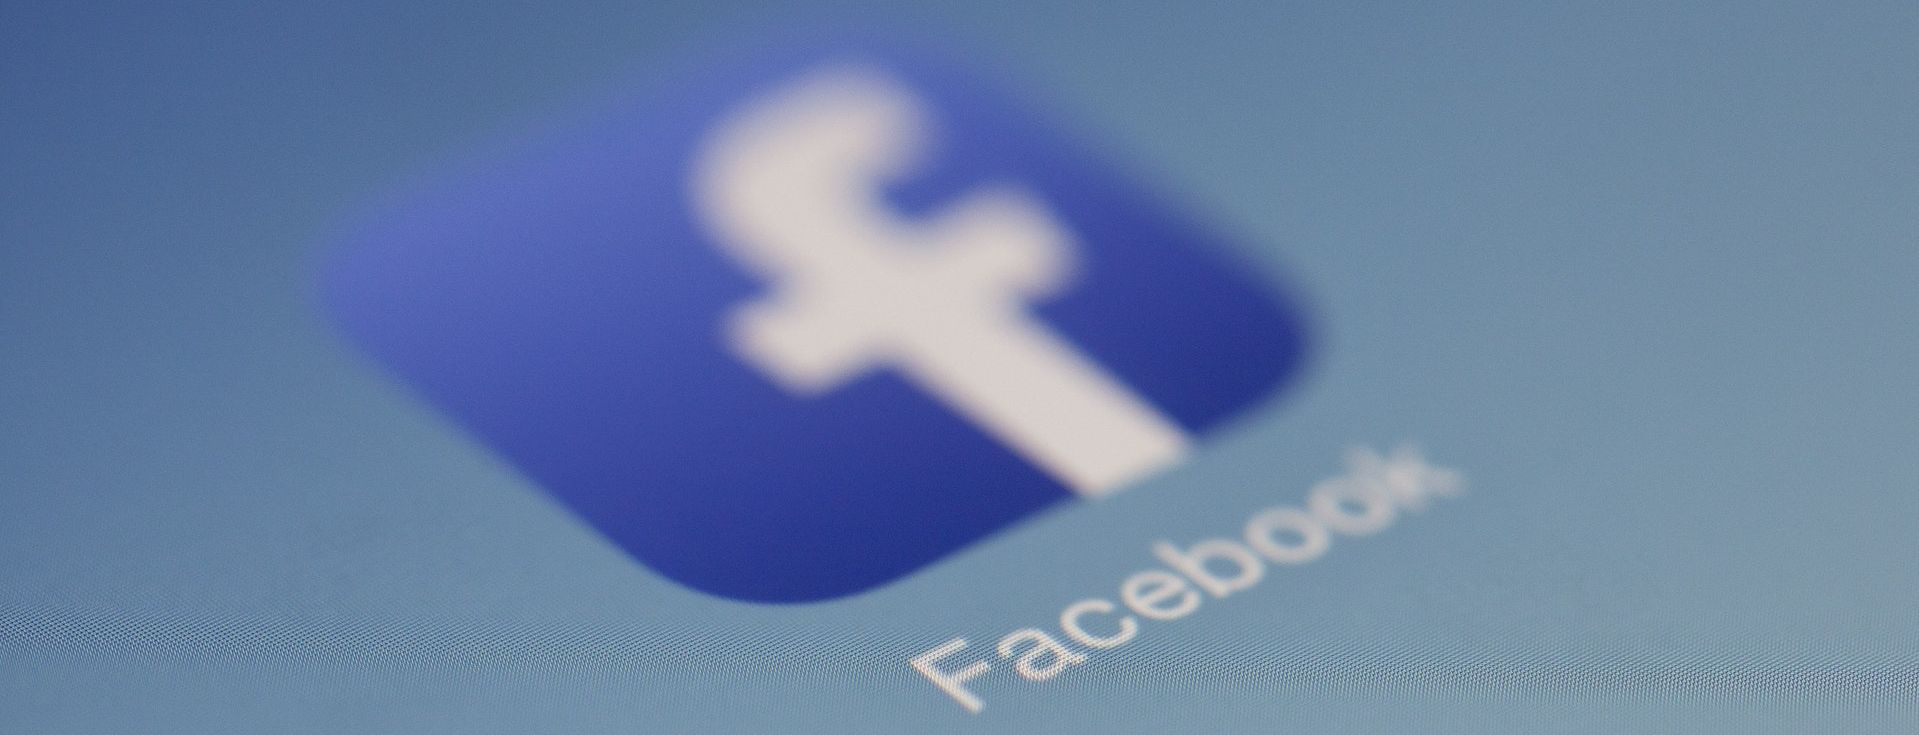 Cambridge Analytica : Facebook négocie un accord judiciaire